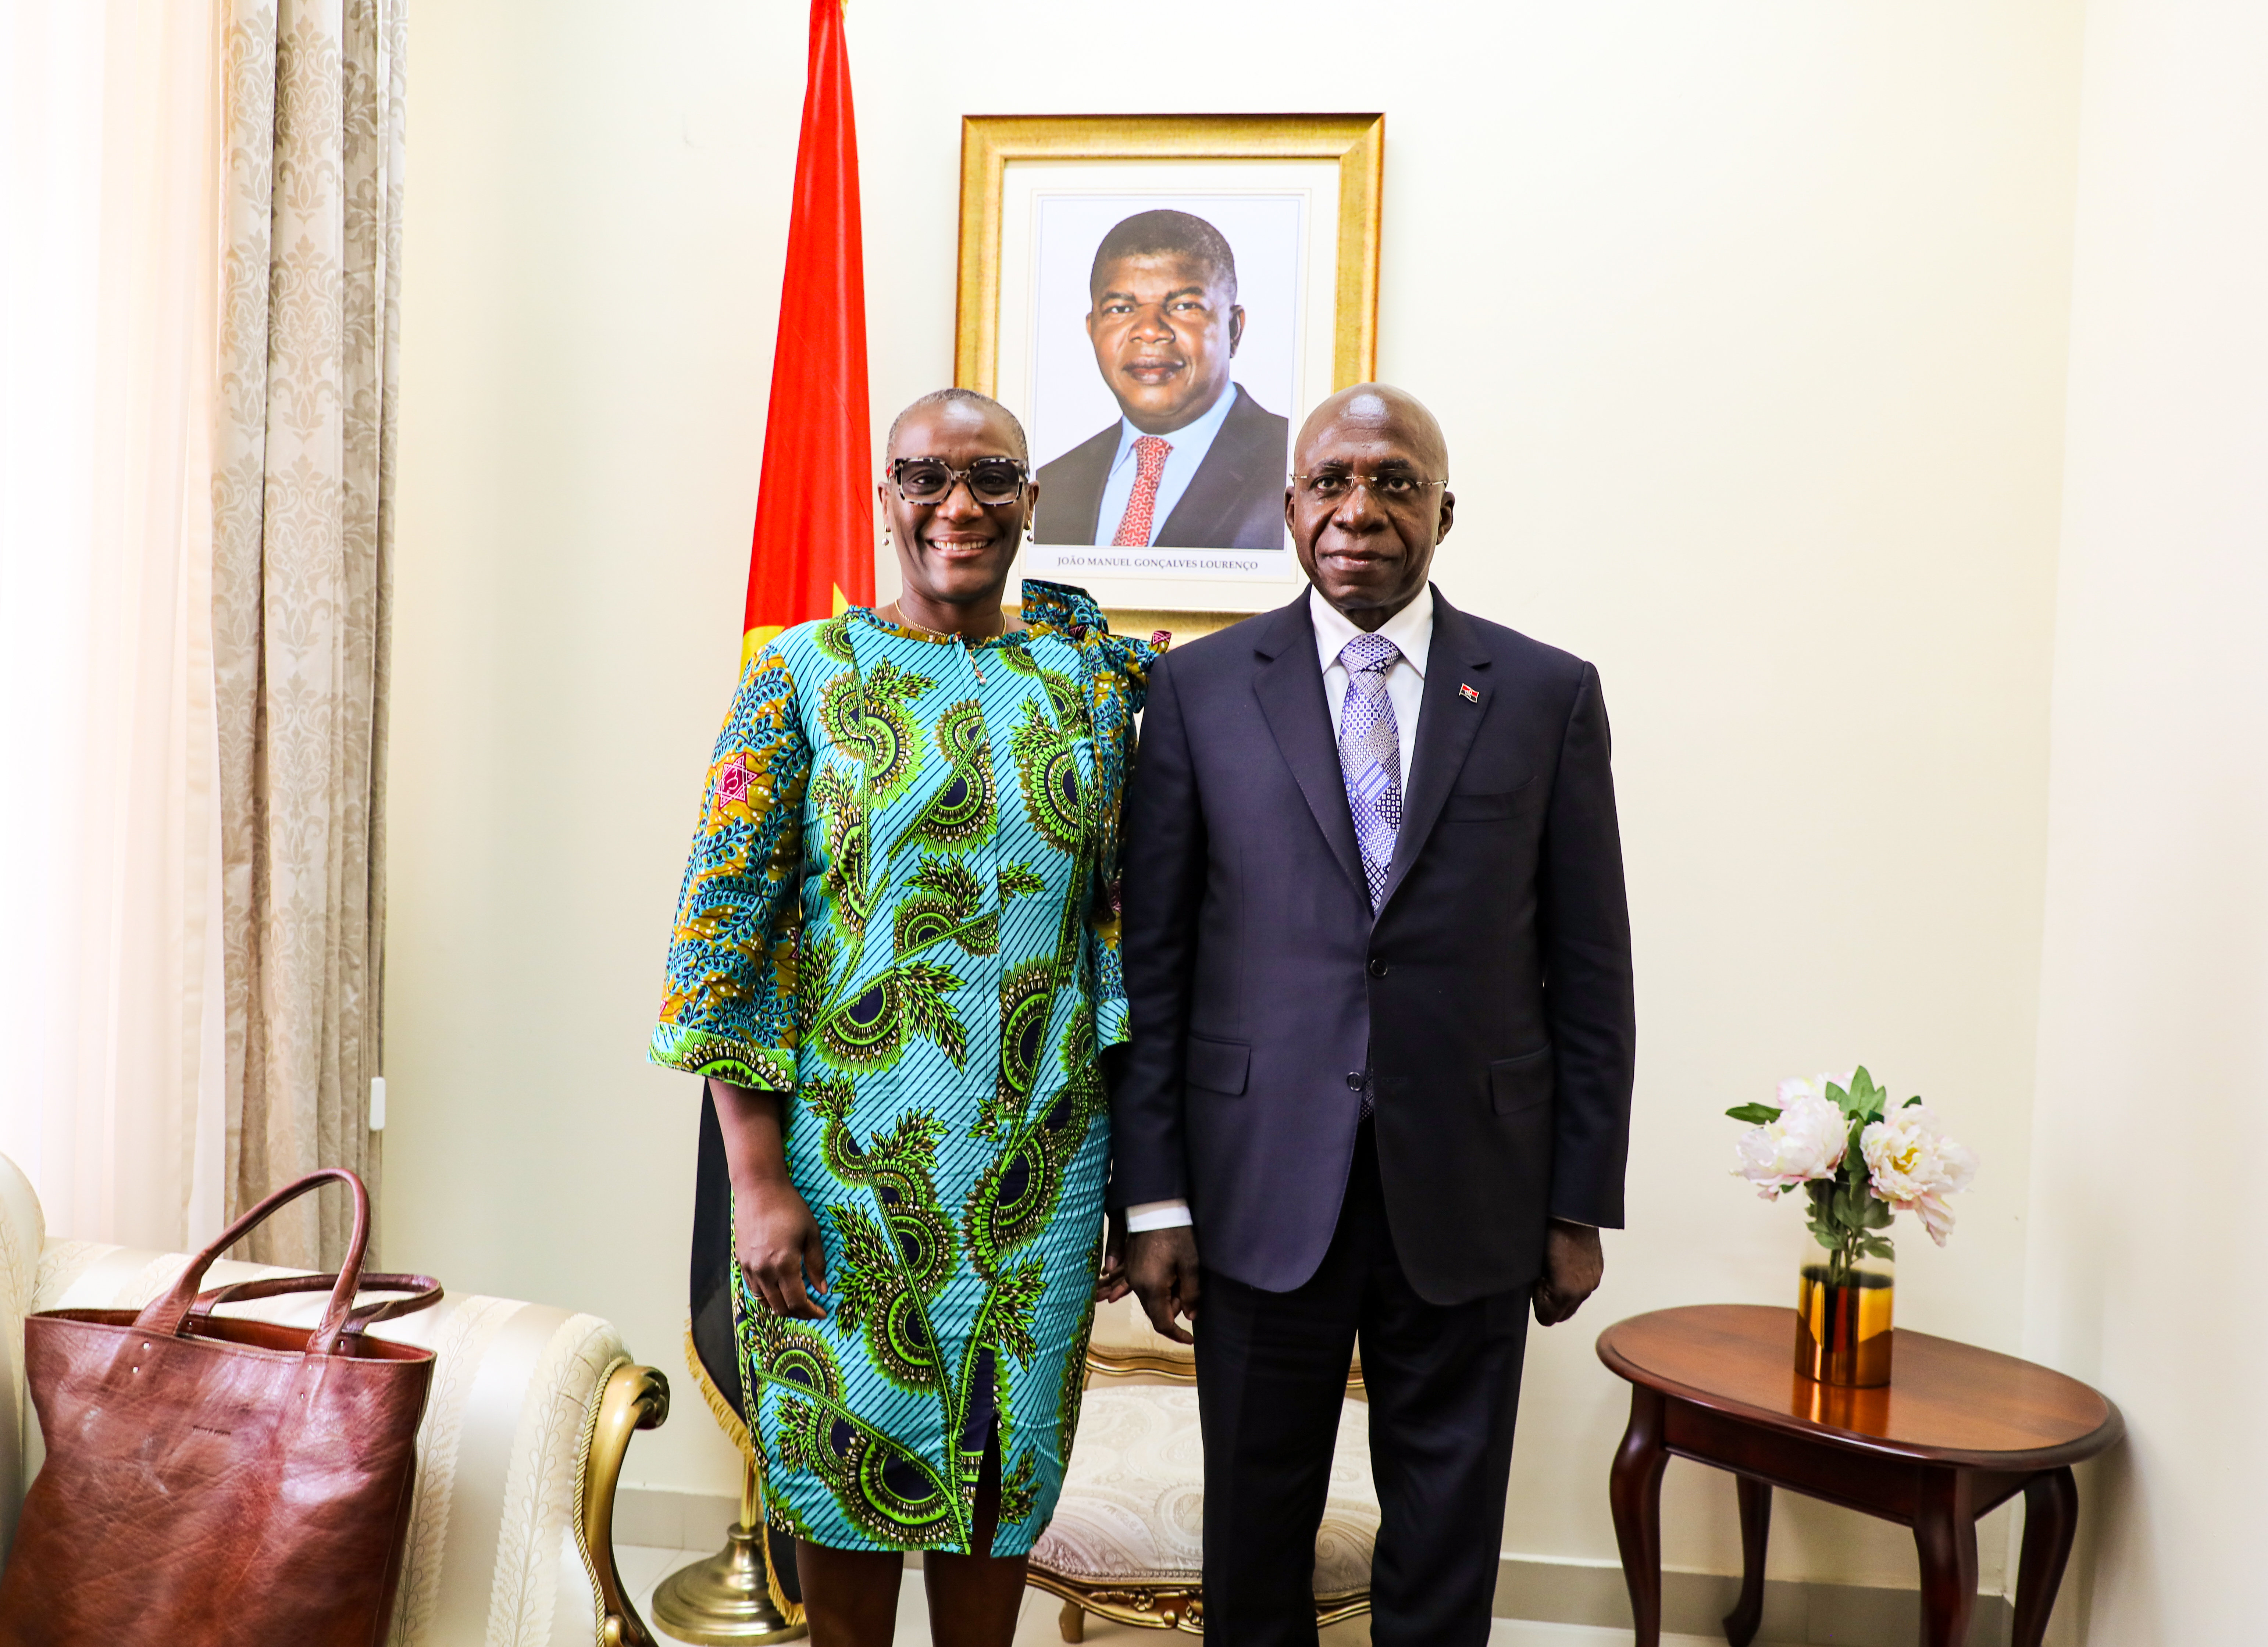 Da direita para a esquerda: Sua Excelência Ministro de Relações Exteriores, Teté António, nova Representante Residente do Programa das Nações Unidas para o Desenvolvimento (PNUD) em Angola, Dra. Denise António 